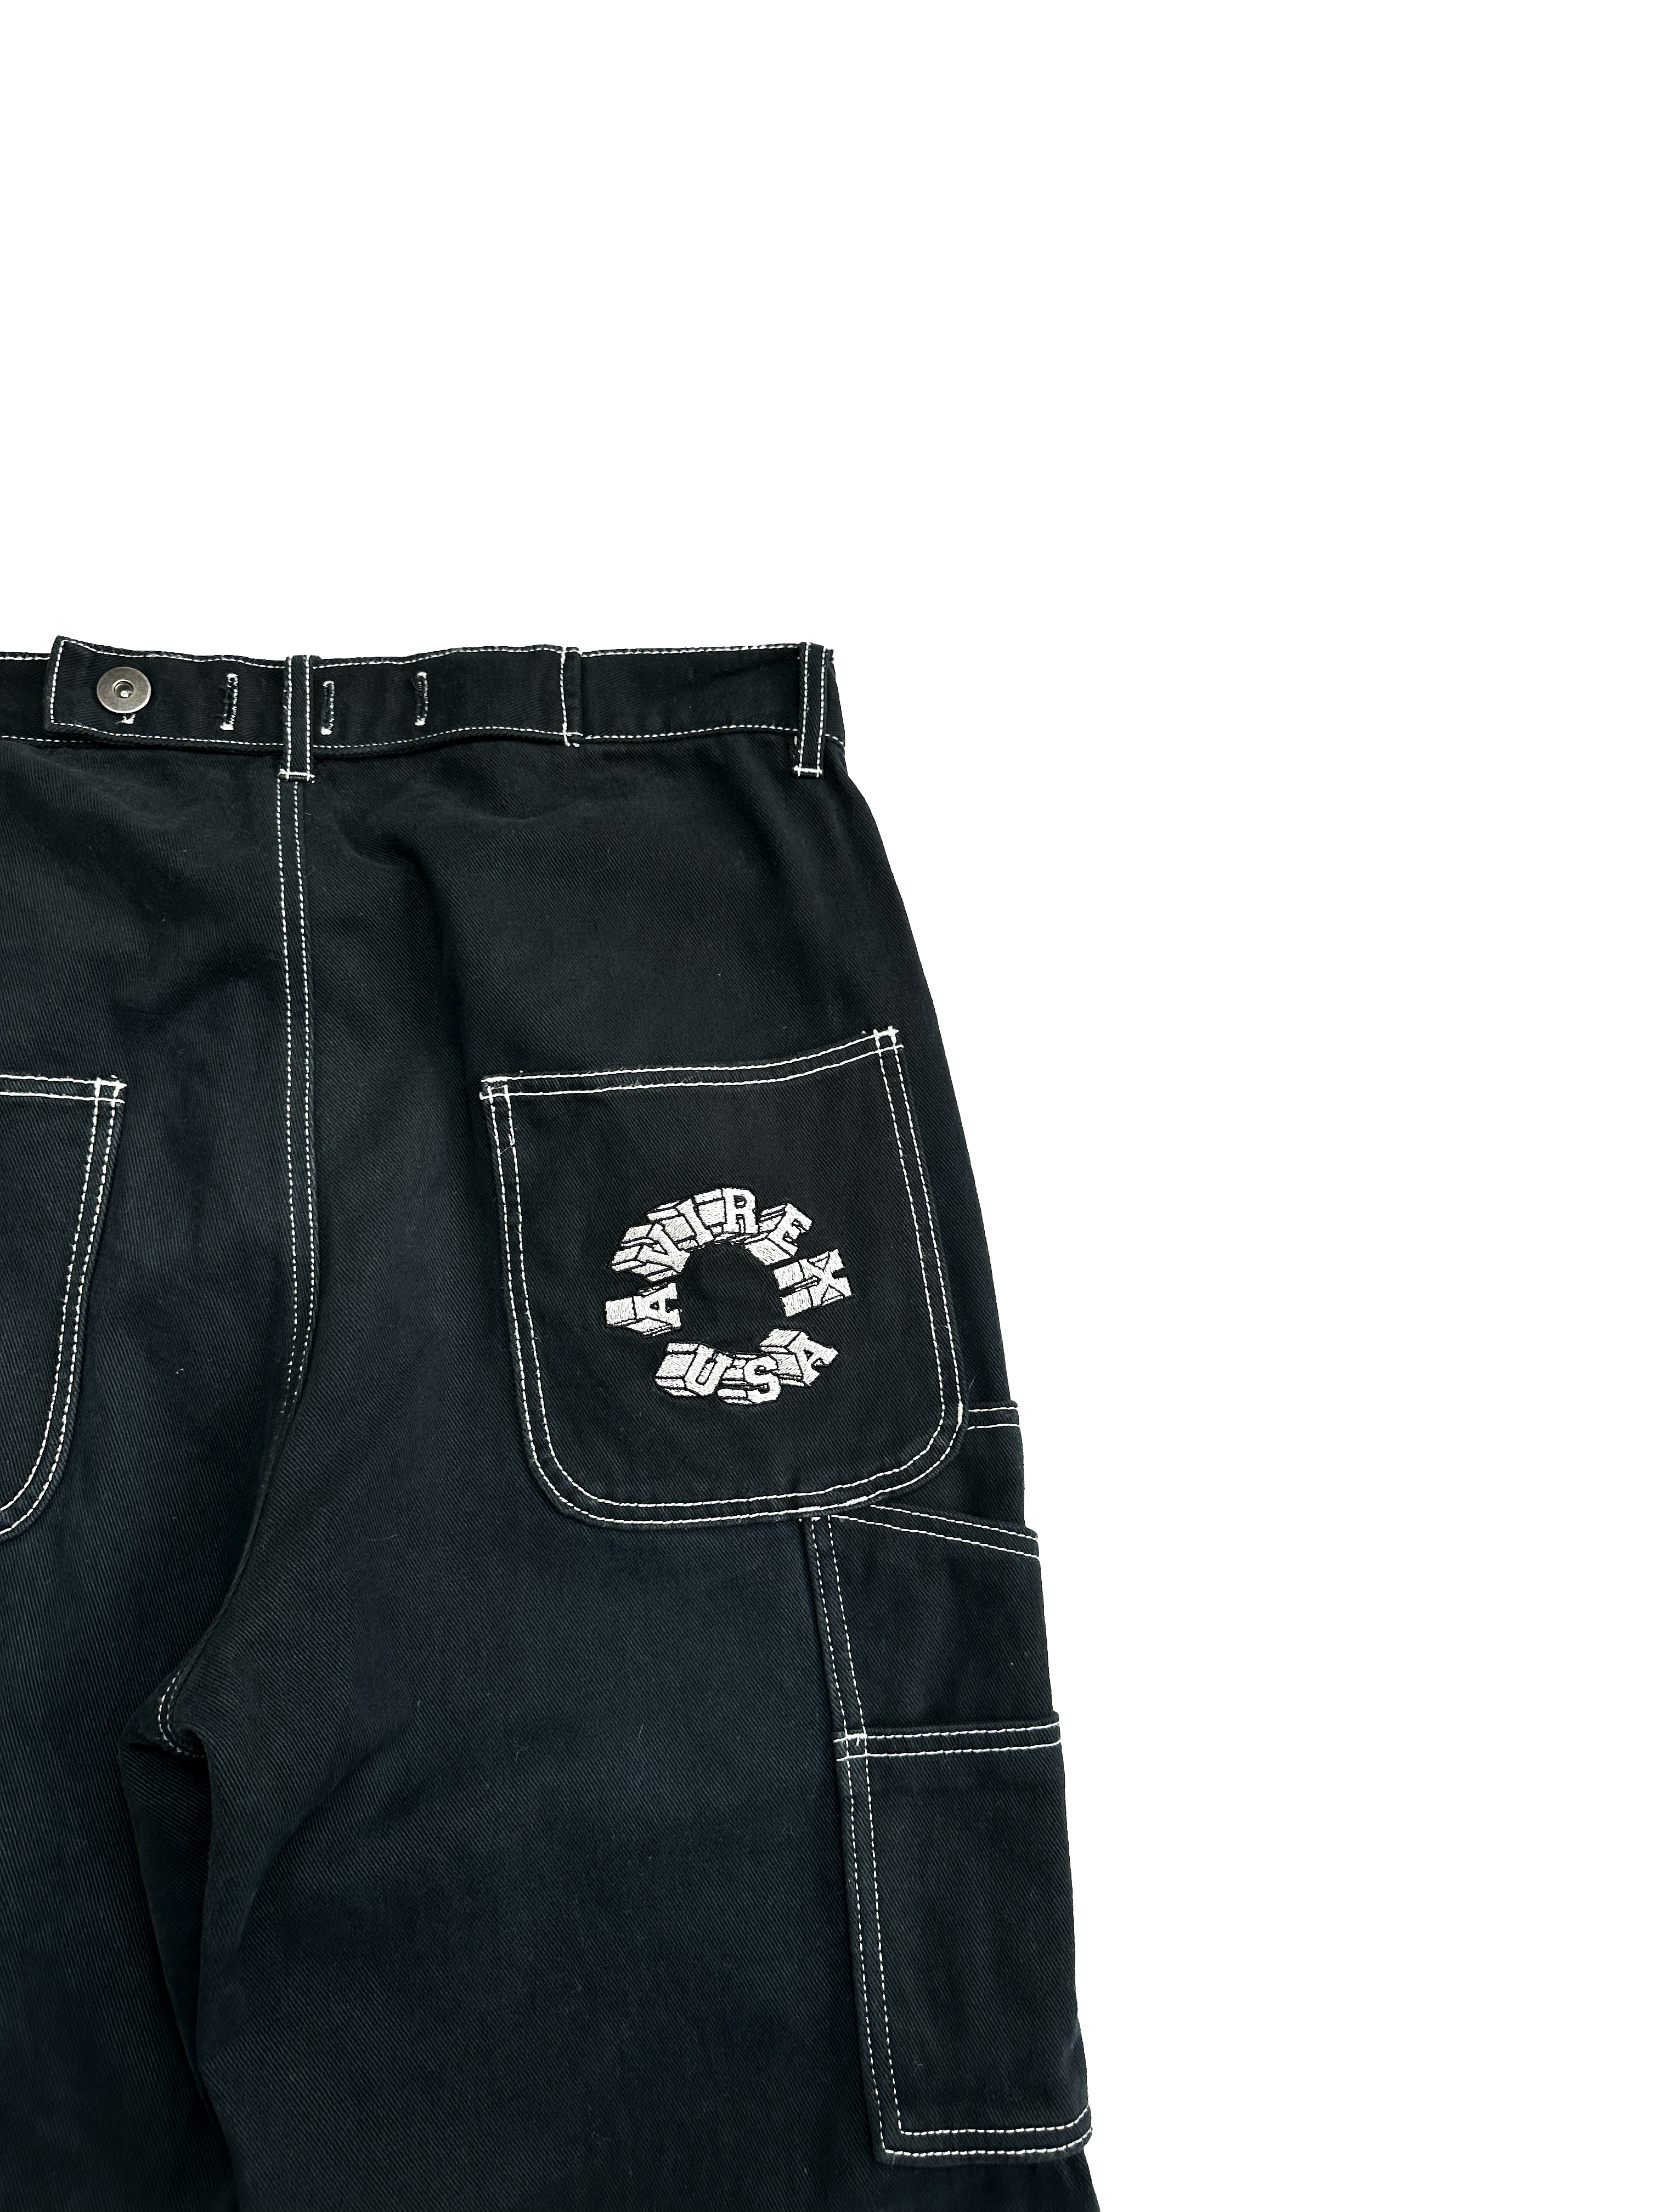 Avirex Black Carpenter Jeans 90's